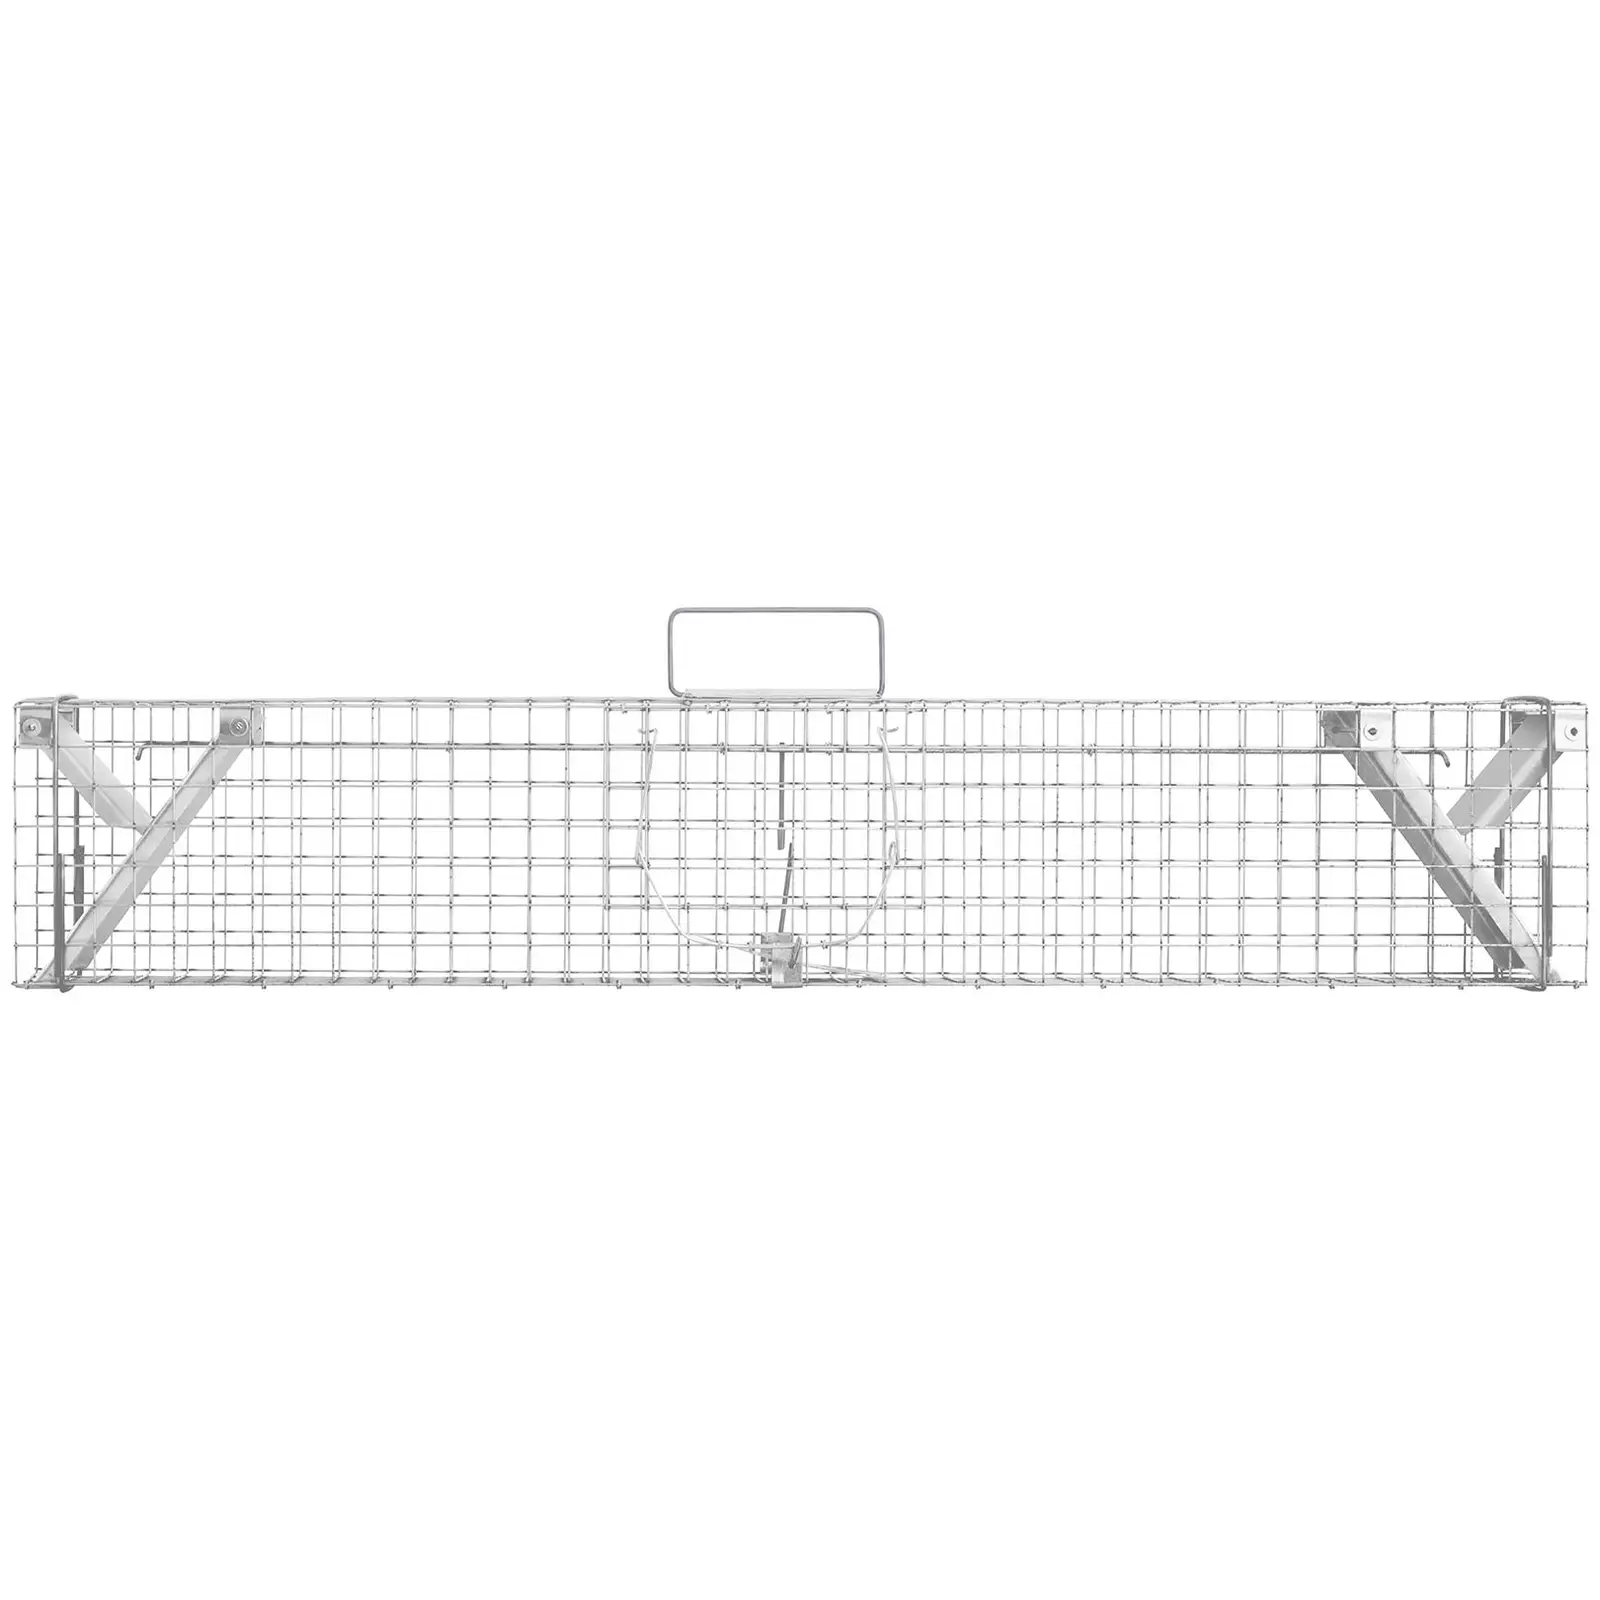 Trappola per animali - 122 x 29 x 32.5 cm - Dimensioni delle maglie: 25 x 25 mm